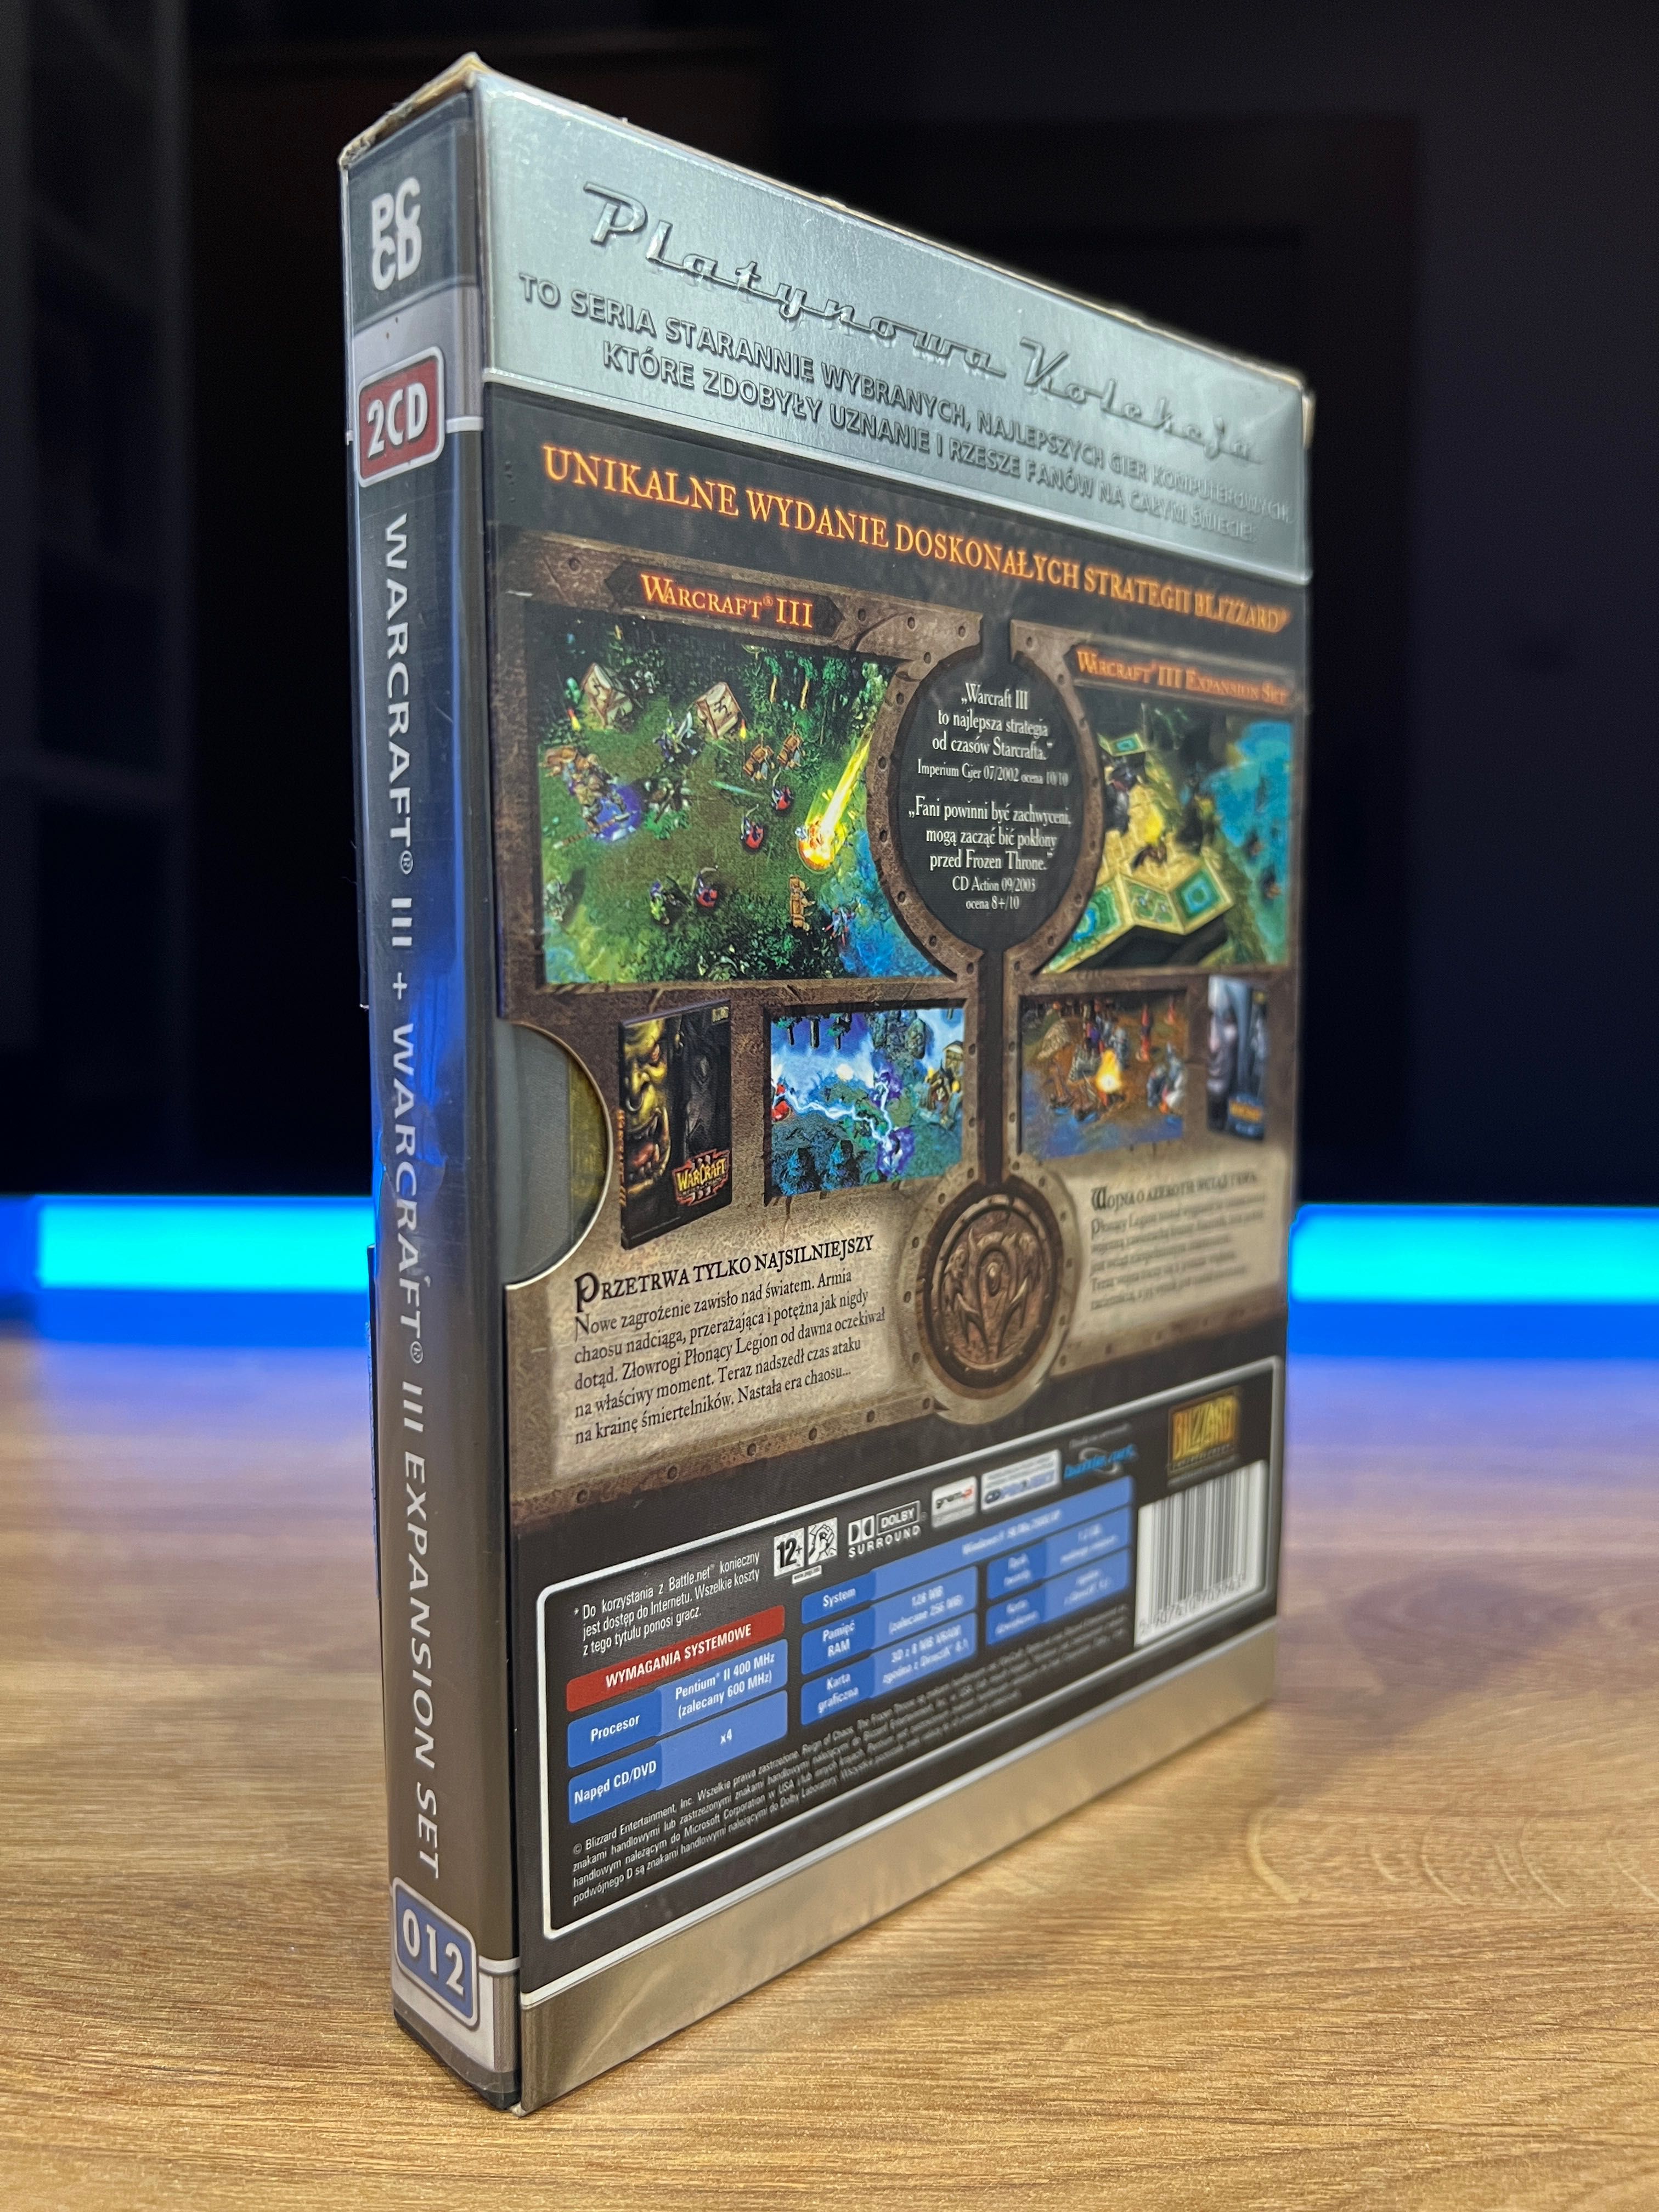 Warcraft III 3 (PC PL 2002) slipcase box wydanie Platynowa Kolekcja